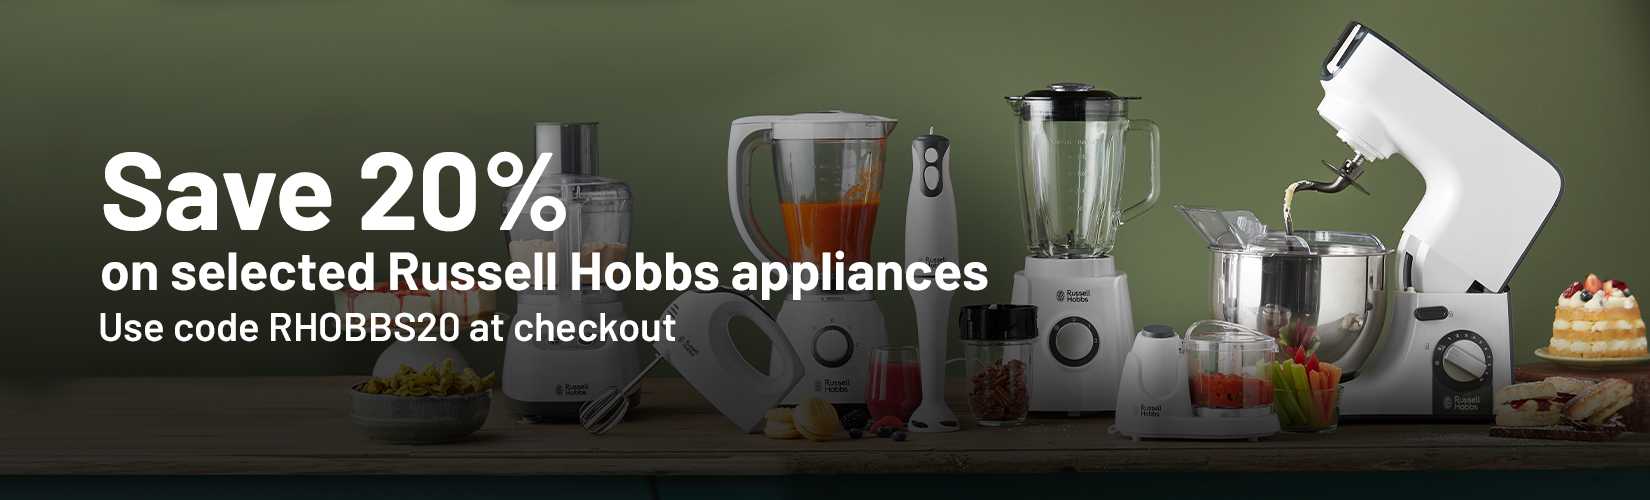 Russell Hobbs Jet Black Retro Blender 800W, Blenders, Food Preparation  Appliances, Appliances, Household